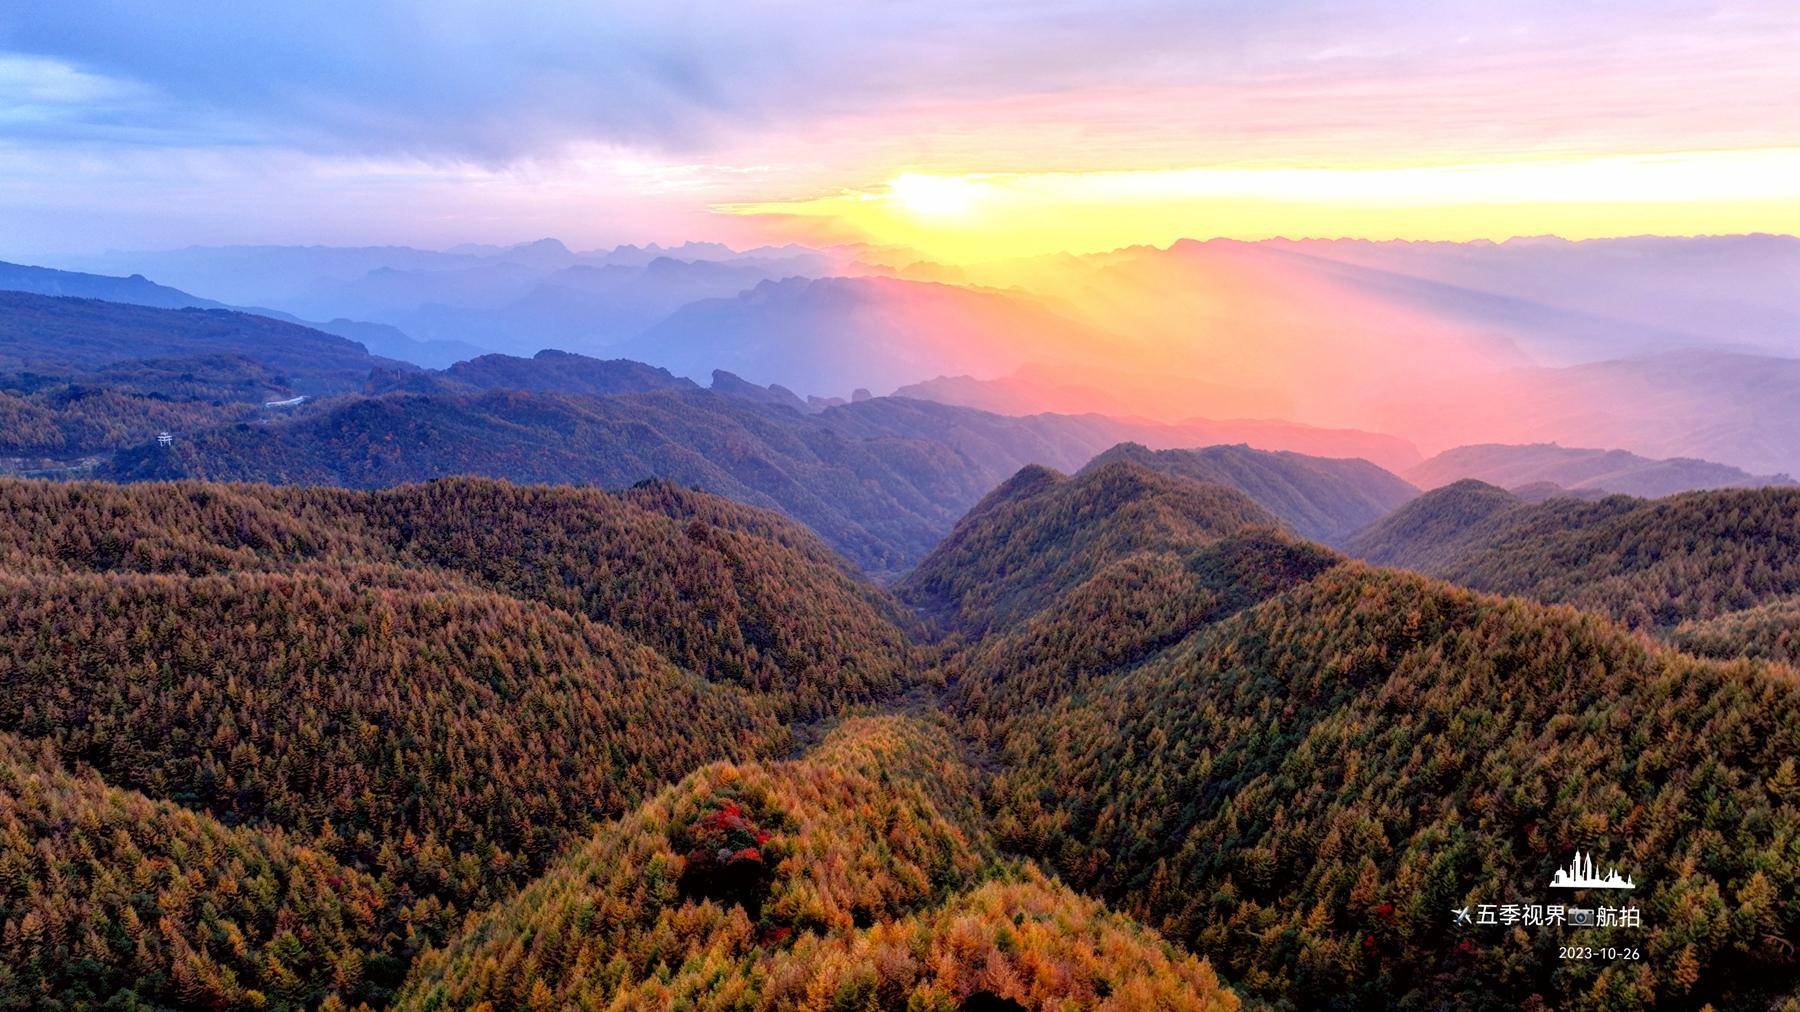 从空中俯瞰,米仓山大峡谷万山红遍,宛如一幅秋日画卷令人震撼!